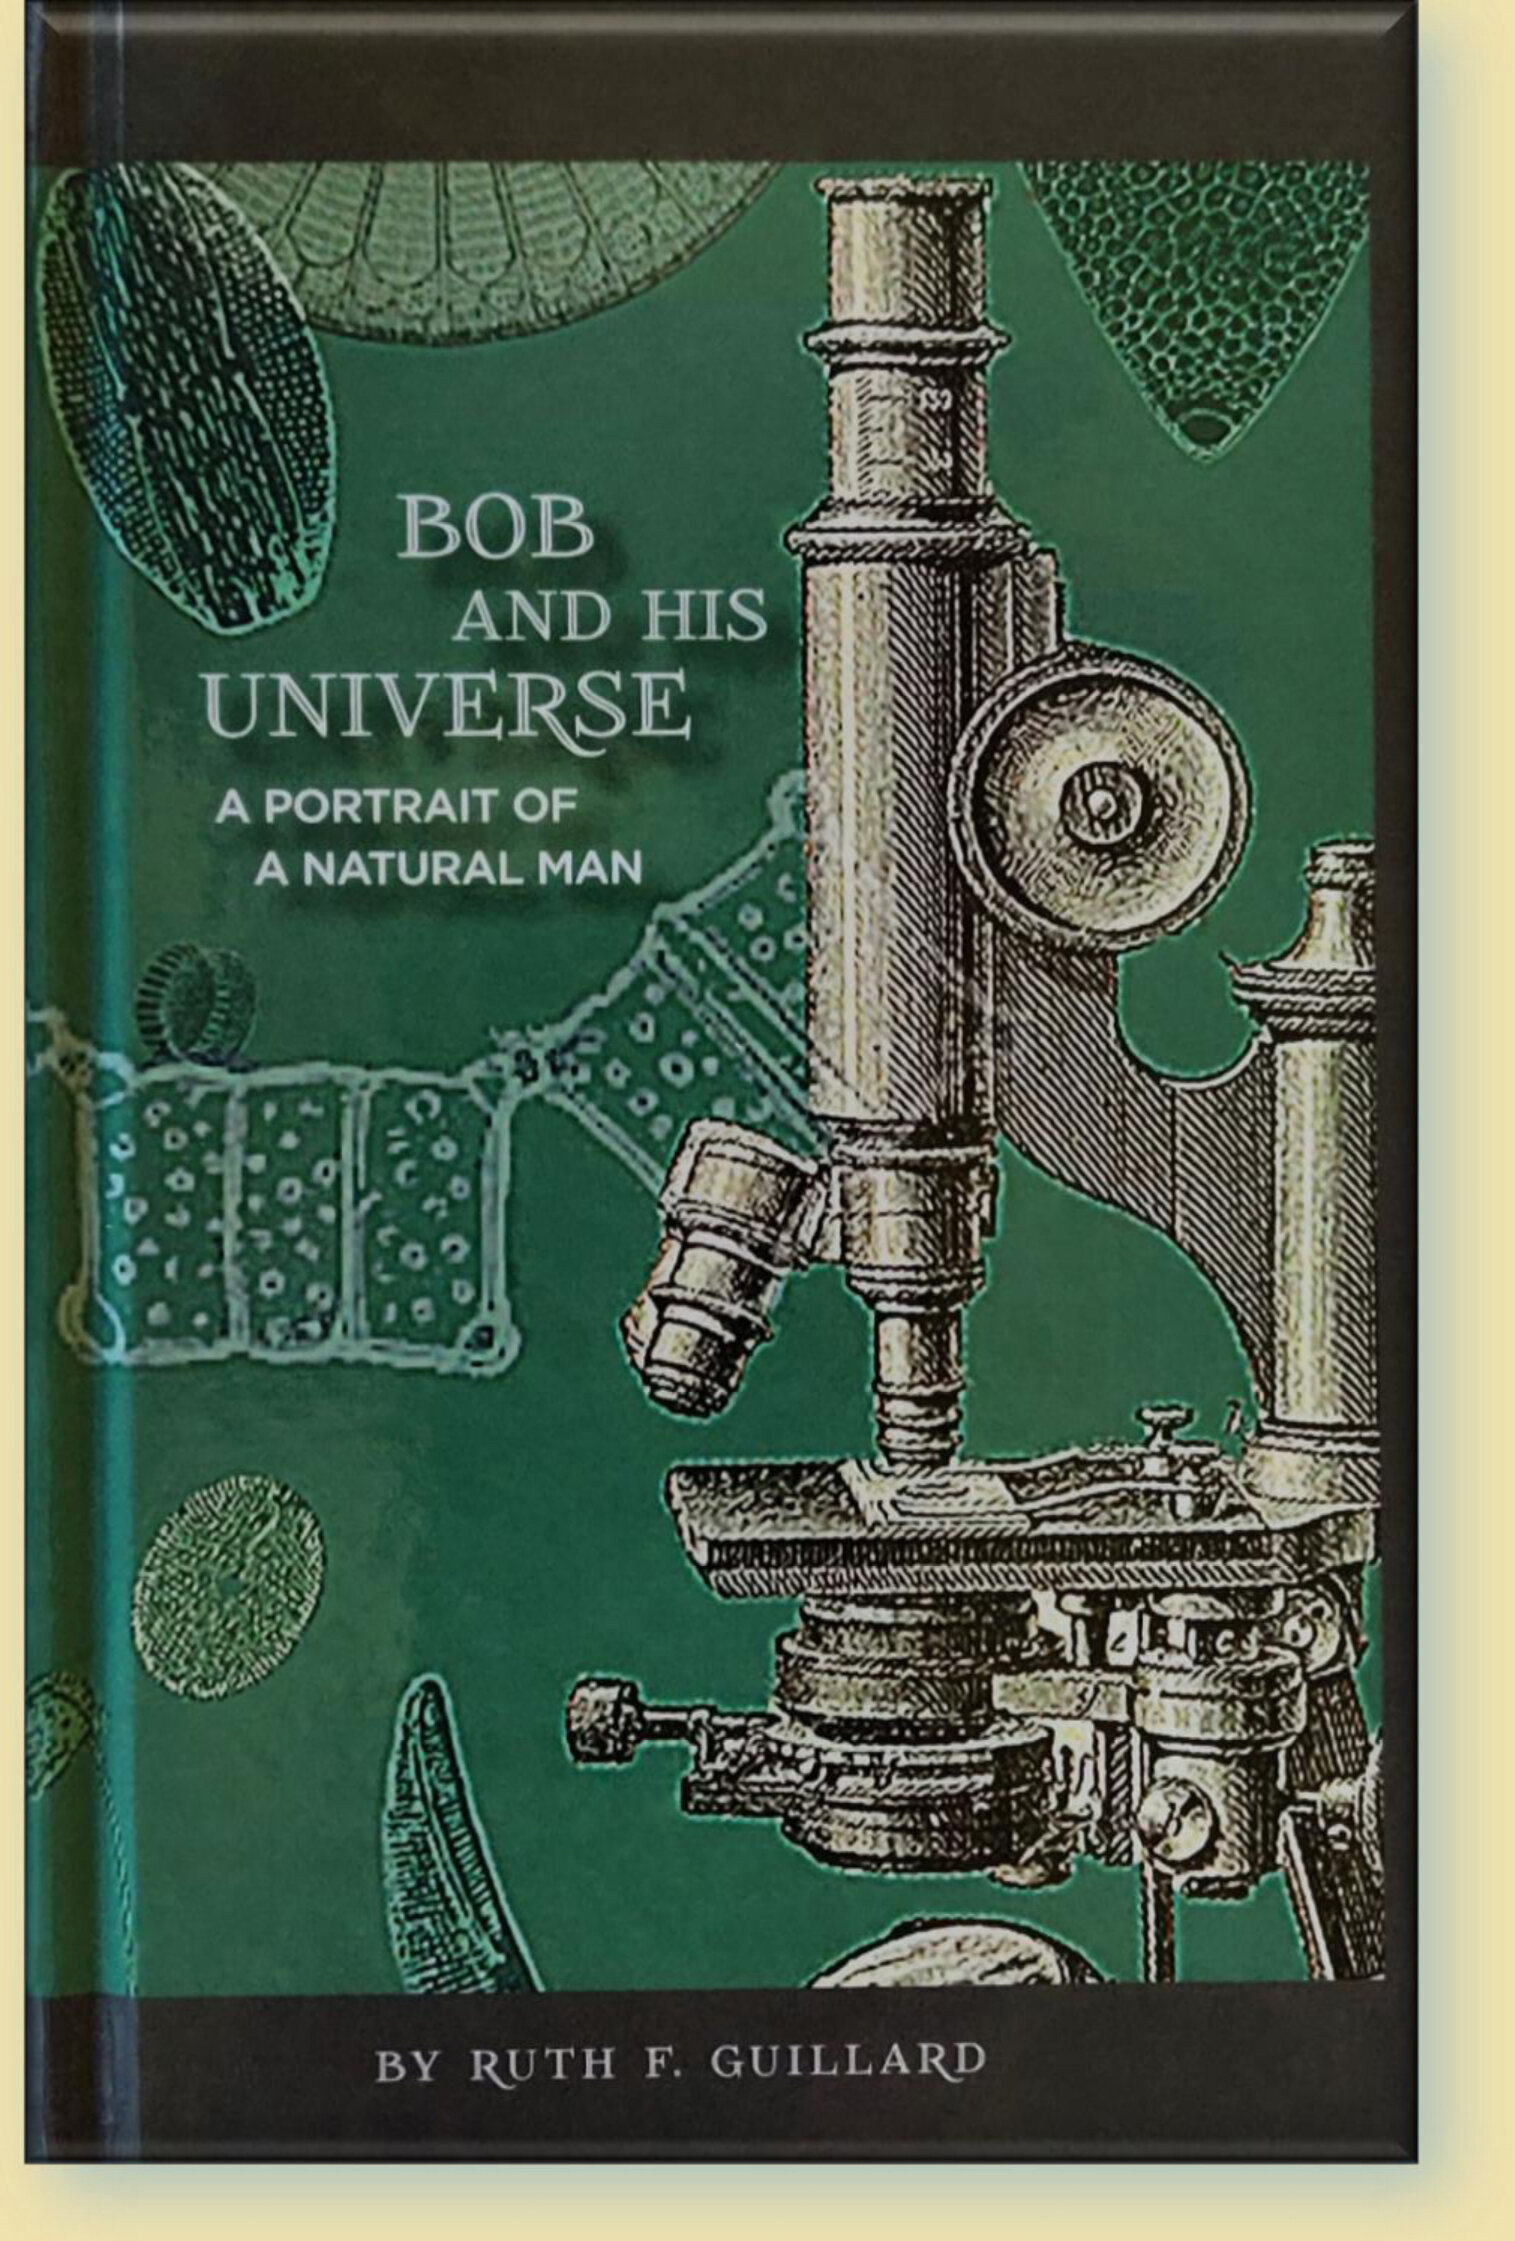 Bob front cover 3D.jpg